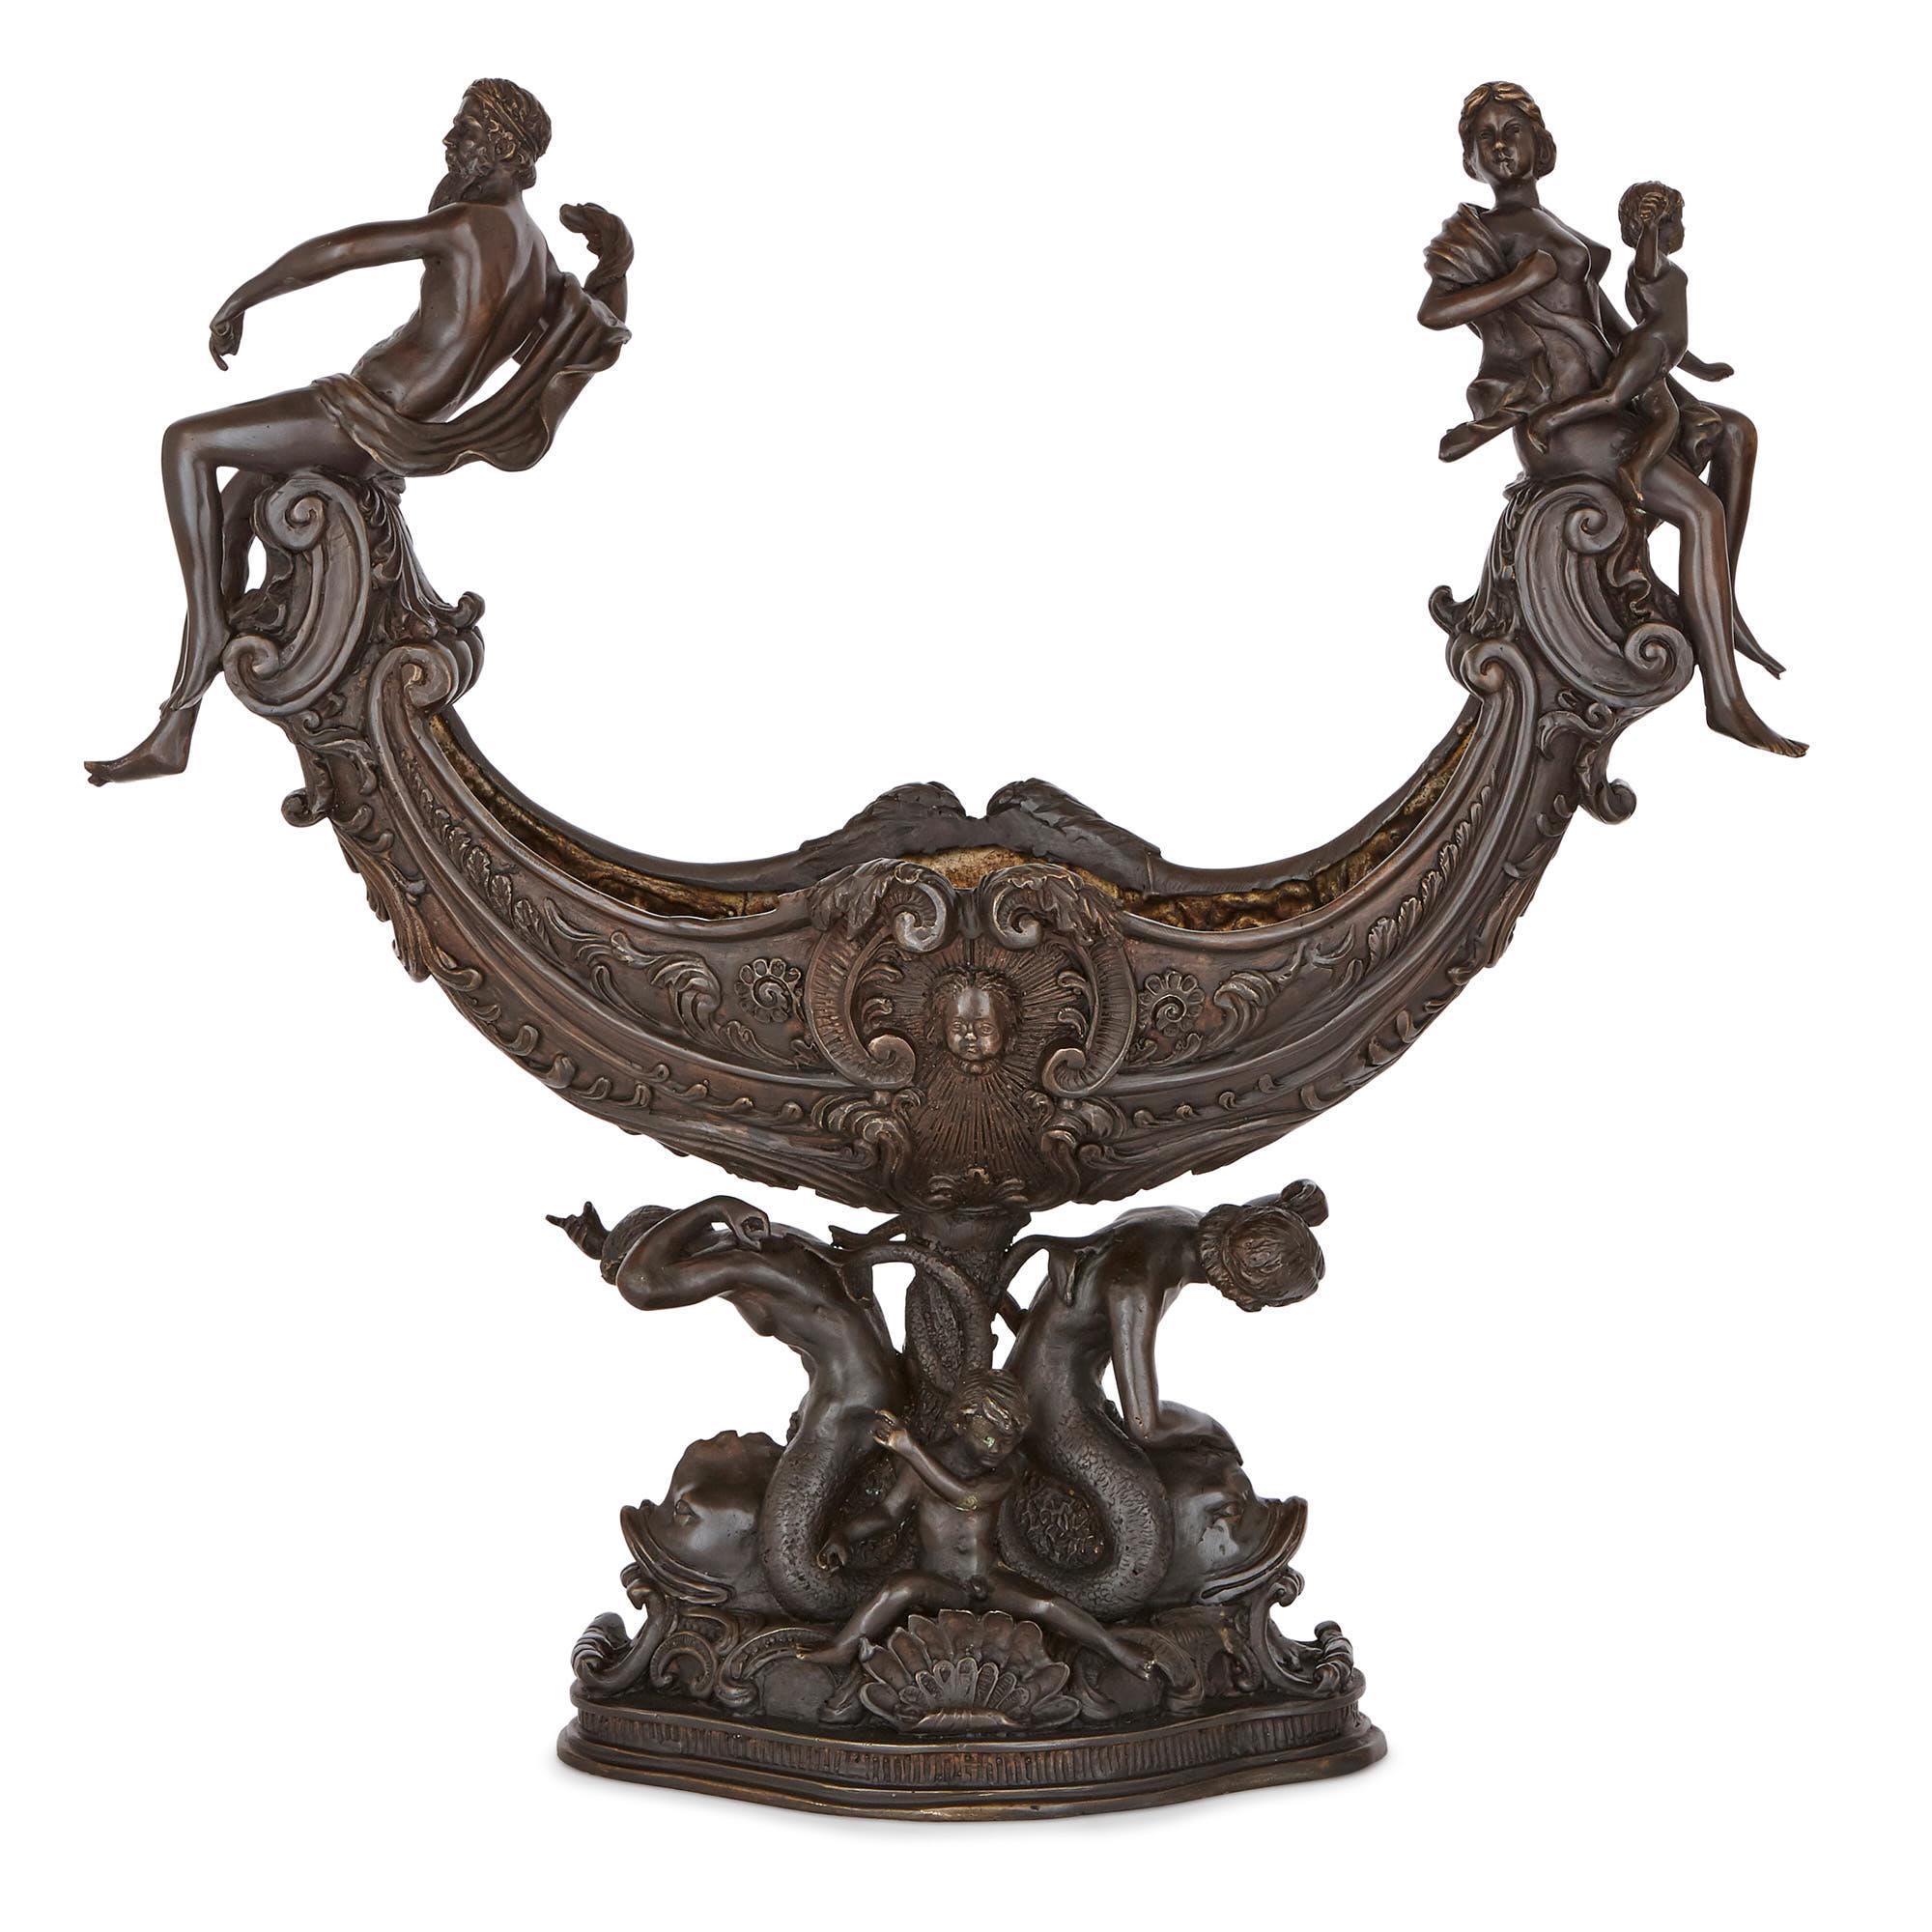 Cette garniture de centre de table a été fabriquée au XIXe siècle en Italie. Les deux objets en métal bronzé sont de conception identique, dans un style expressif et d'inspiration classique de la fin de la Renaissance. 

Les objets se présentent